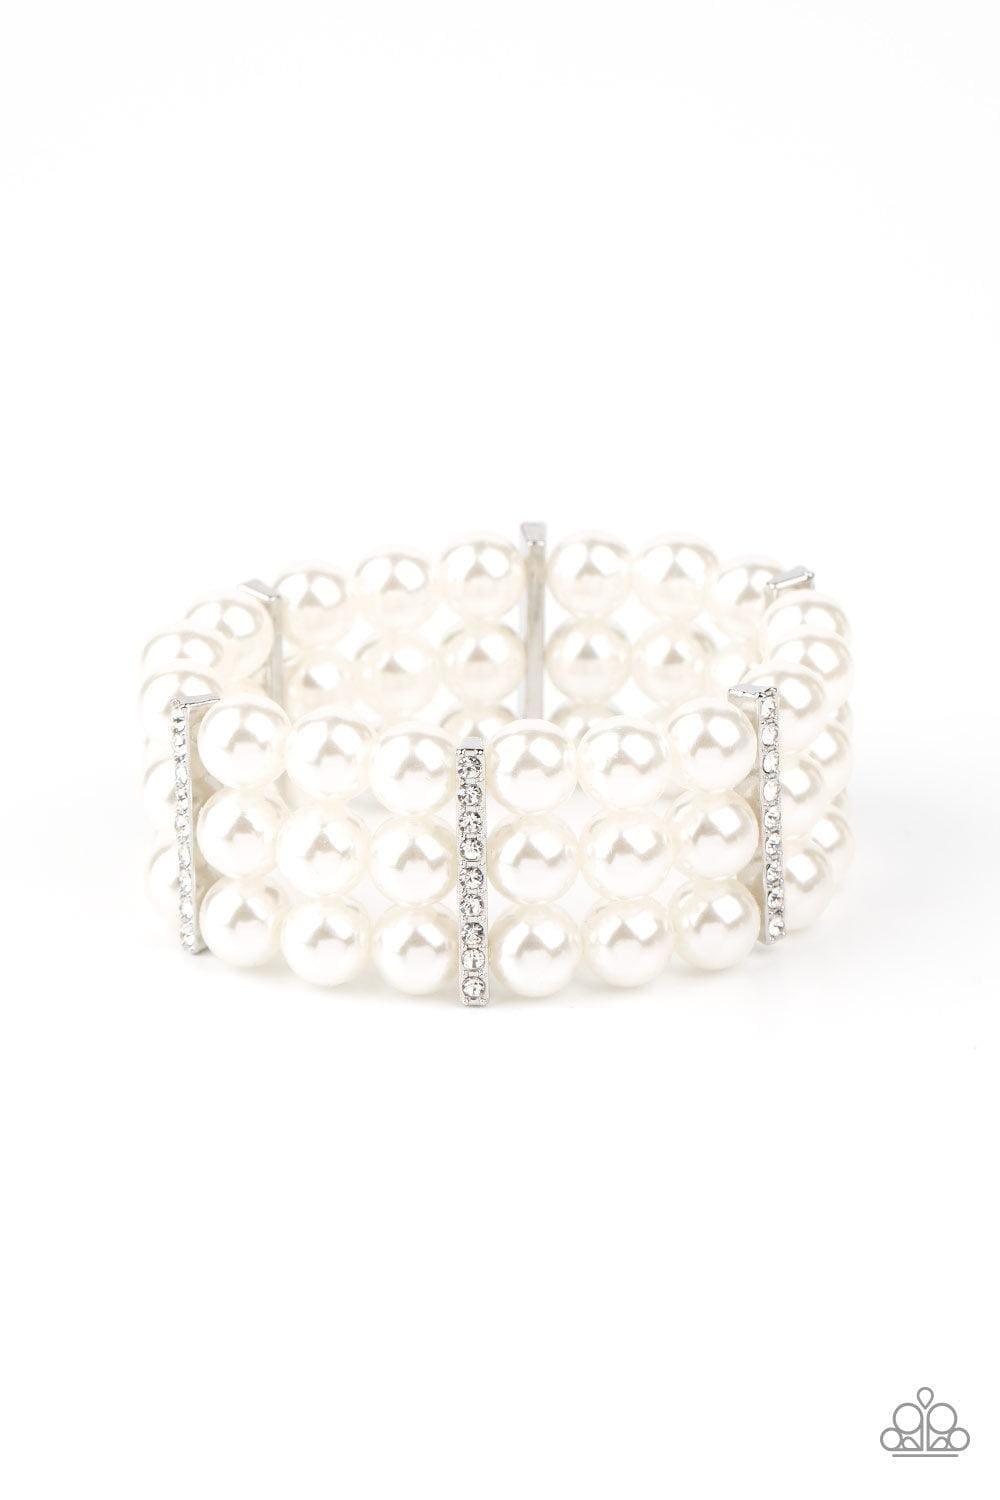 Paparazzi Accessories - Modern Day Majesty - White Bracelet - Bling by JessieK